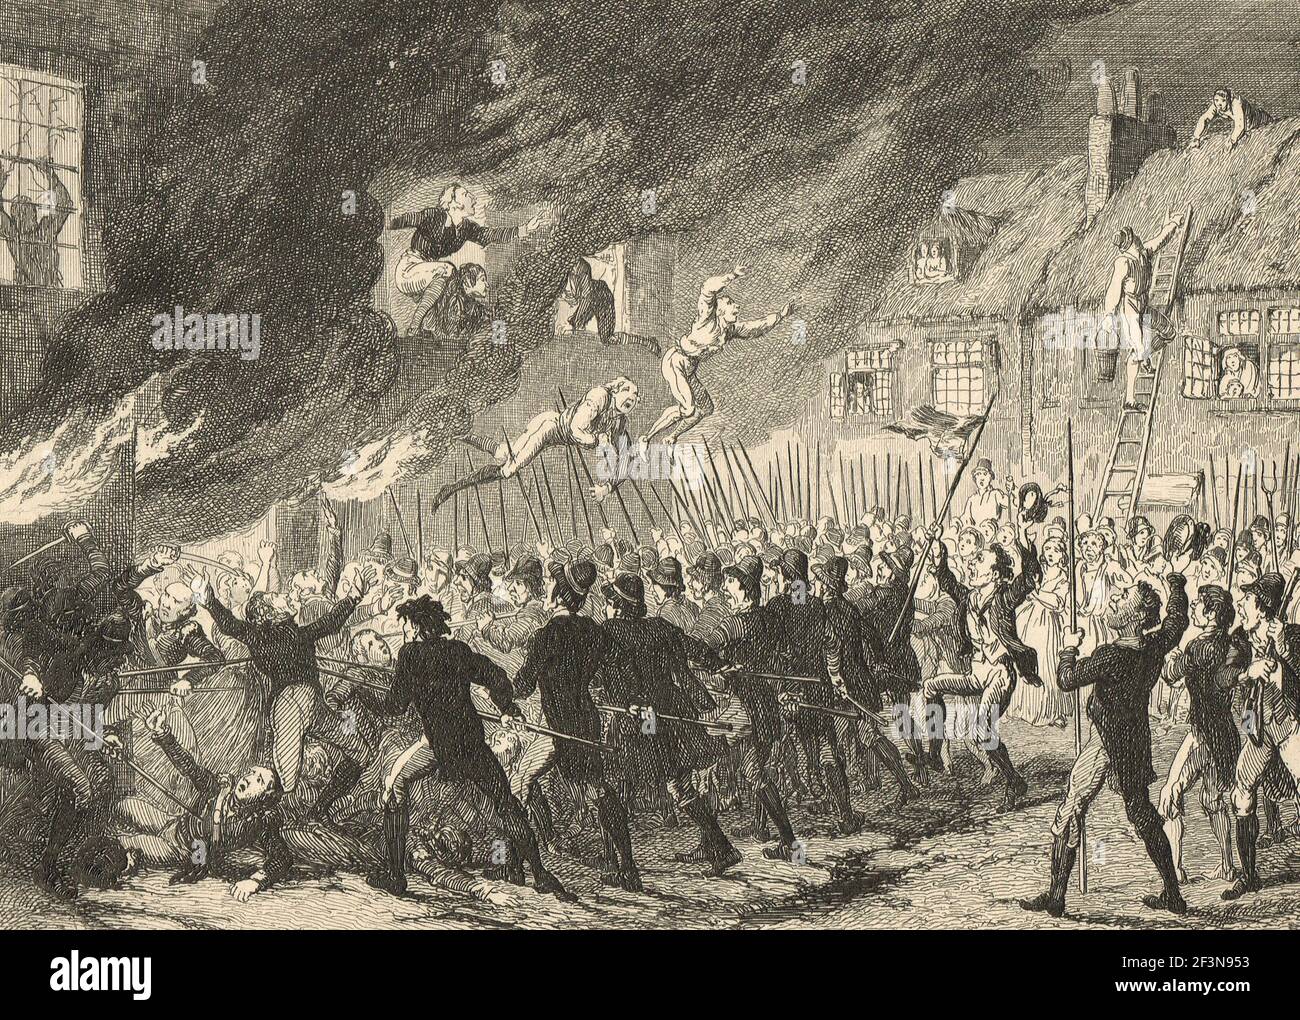 La batalla de la prosperidad, condado de Kildare, 24 de mayo de 1798, durante la rebelión irlandesa de 1798 Foto de stock